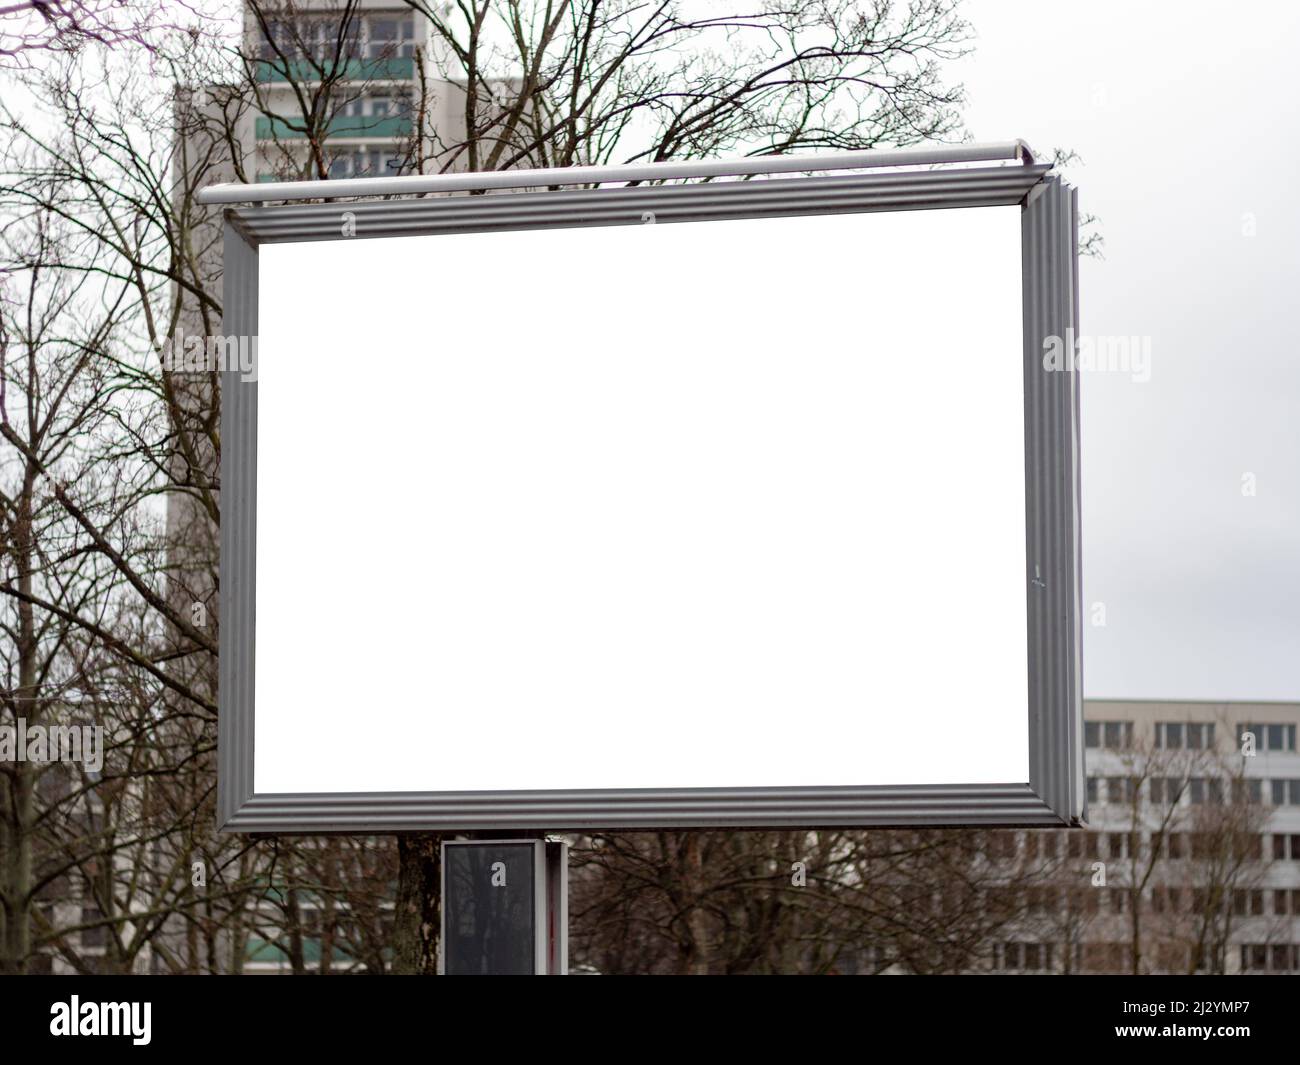 Leeres Billboard-Modell als Kopierfläche für das Testen von Werbung. Leeren Sie den weißen Bildschirm, um Bannerwerbung anzuzeigen. Vorlage für eine Werbekampagne. Stockfoto